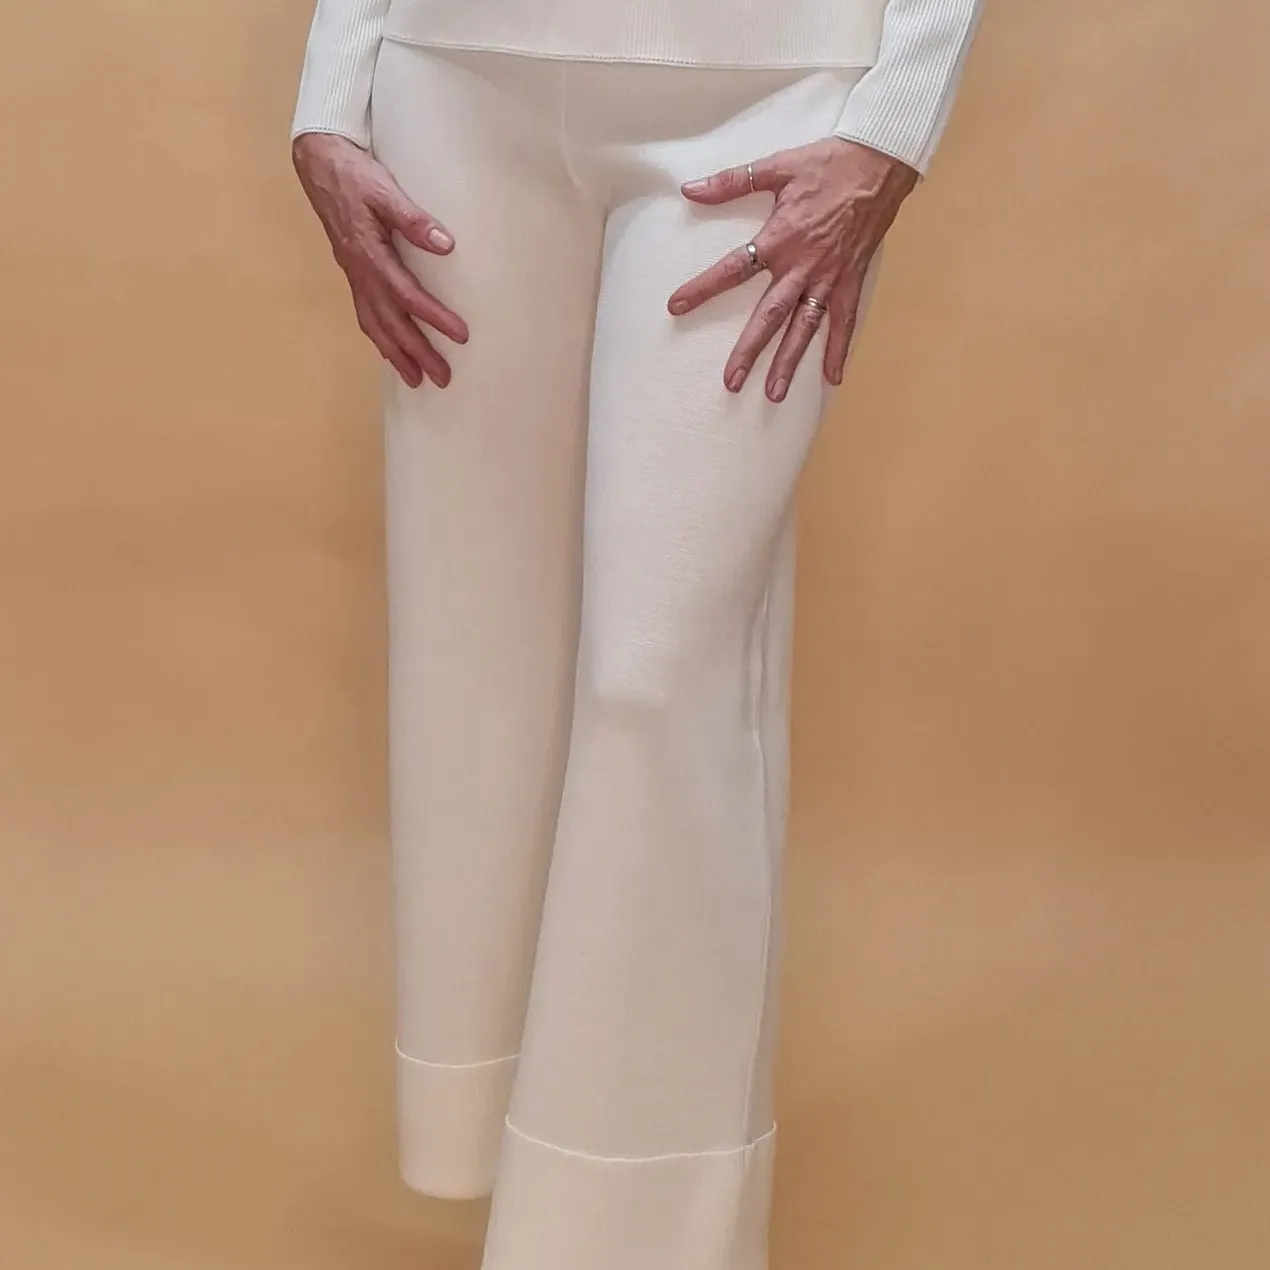 Pantalones de pierna ancha con dobladillo alto en el dobladillo con cintura elástica, suave 100% lana merino extrafina artesanal Made in Italy blanco